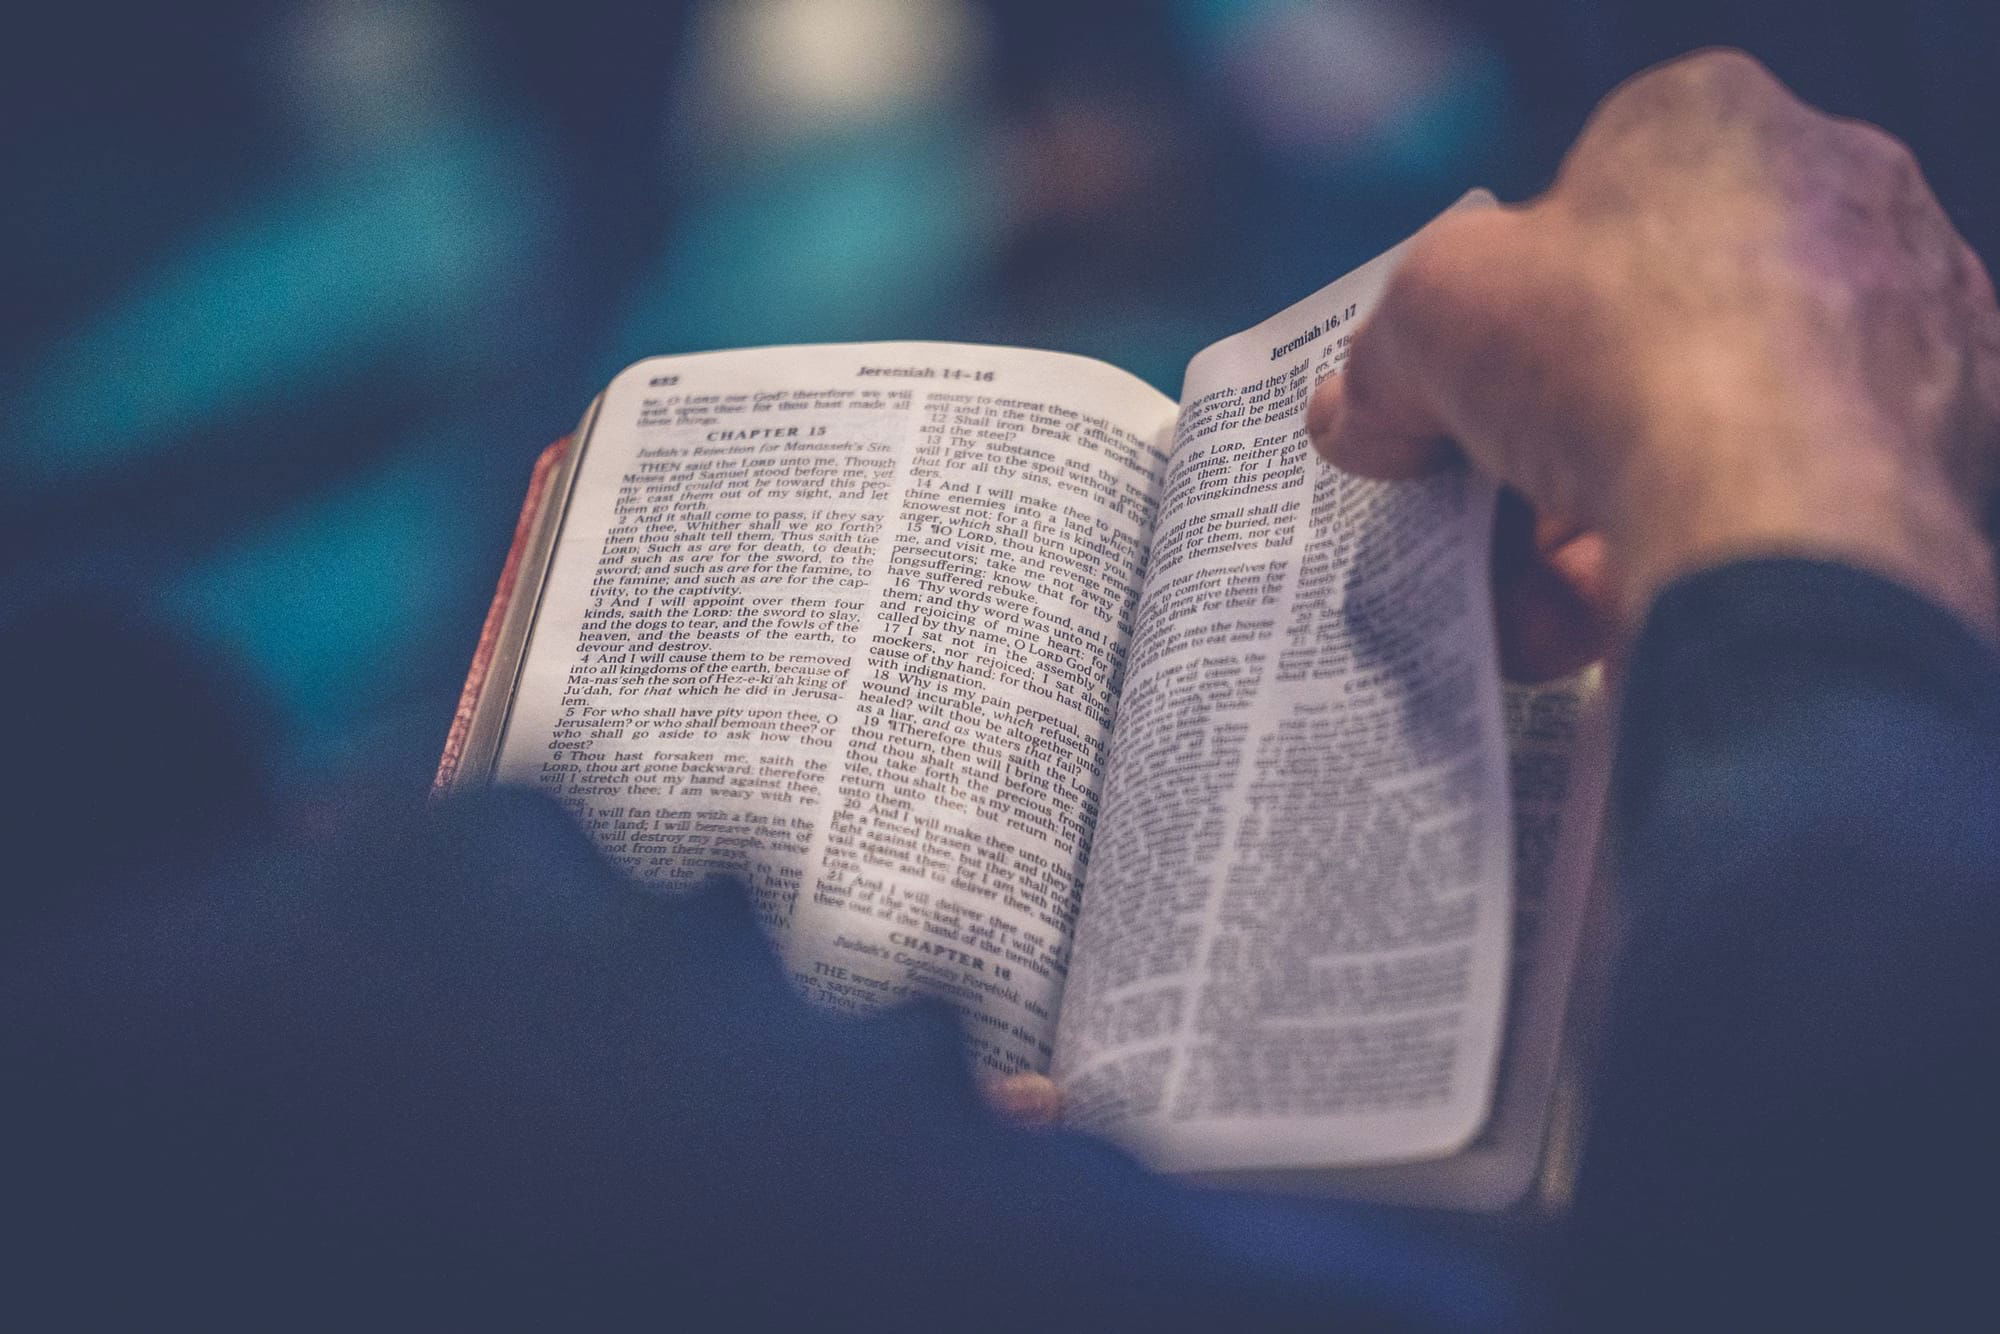 Comment lire la Bible